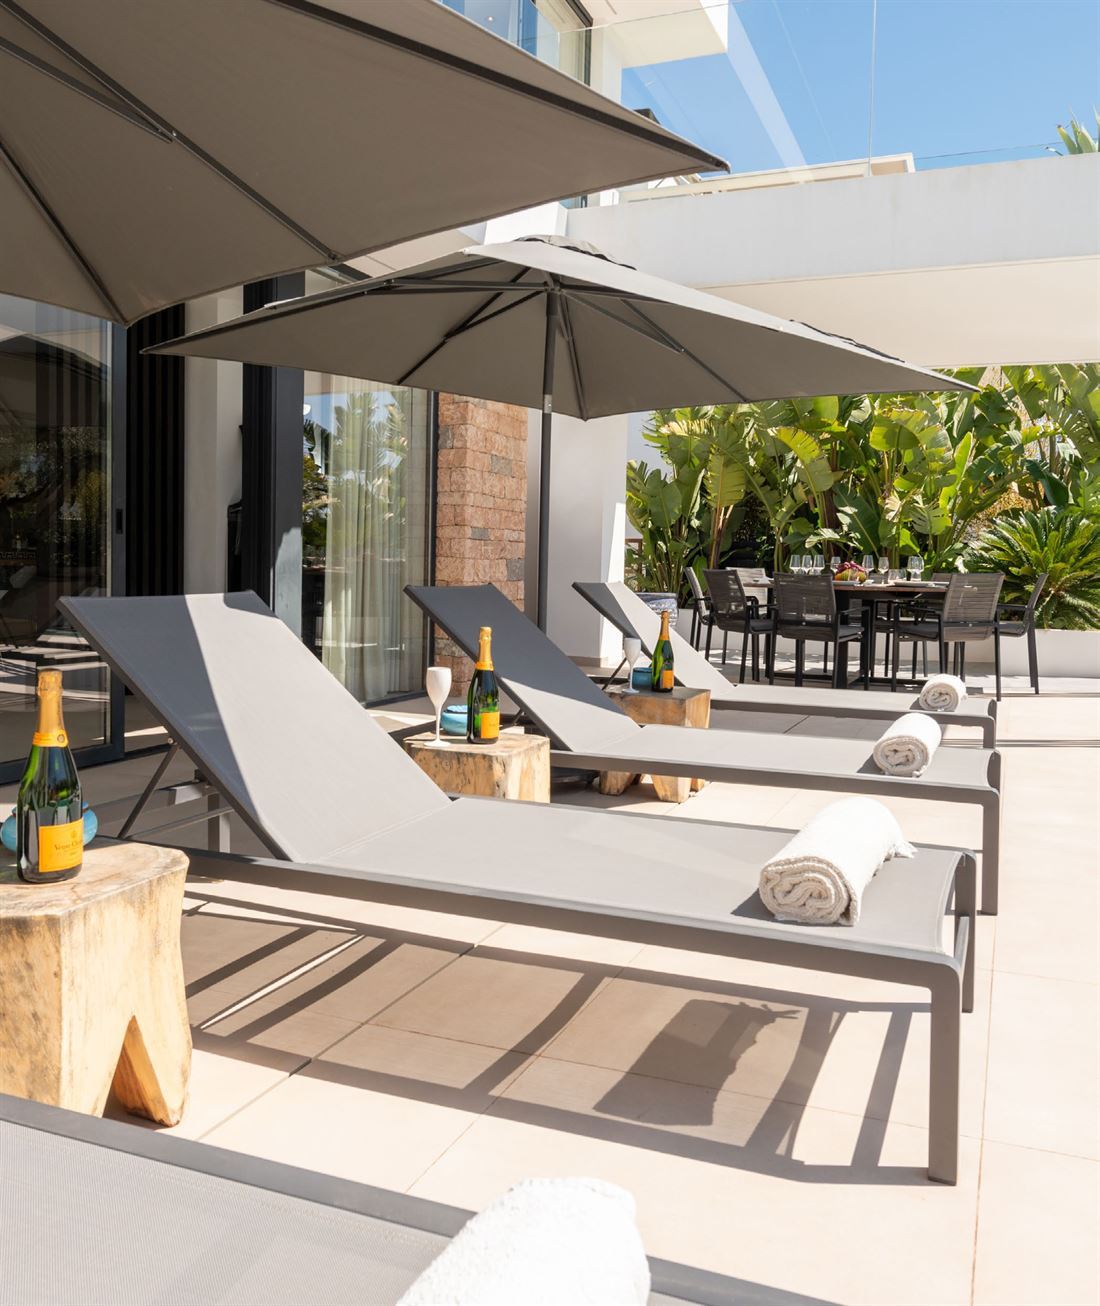 Moderne villa met 6 slaapkamers op een van de meest gewilde locaties op Ibiza